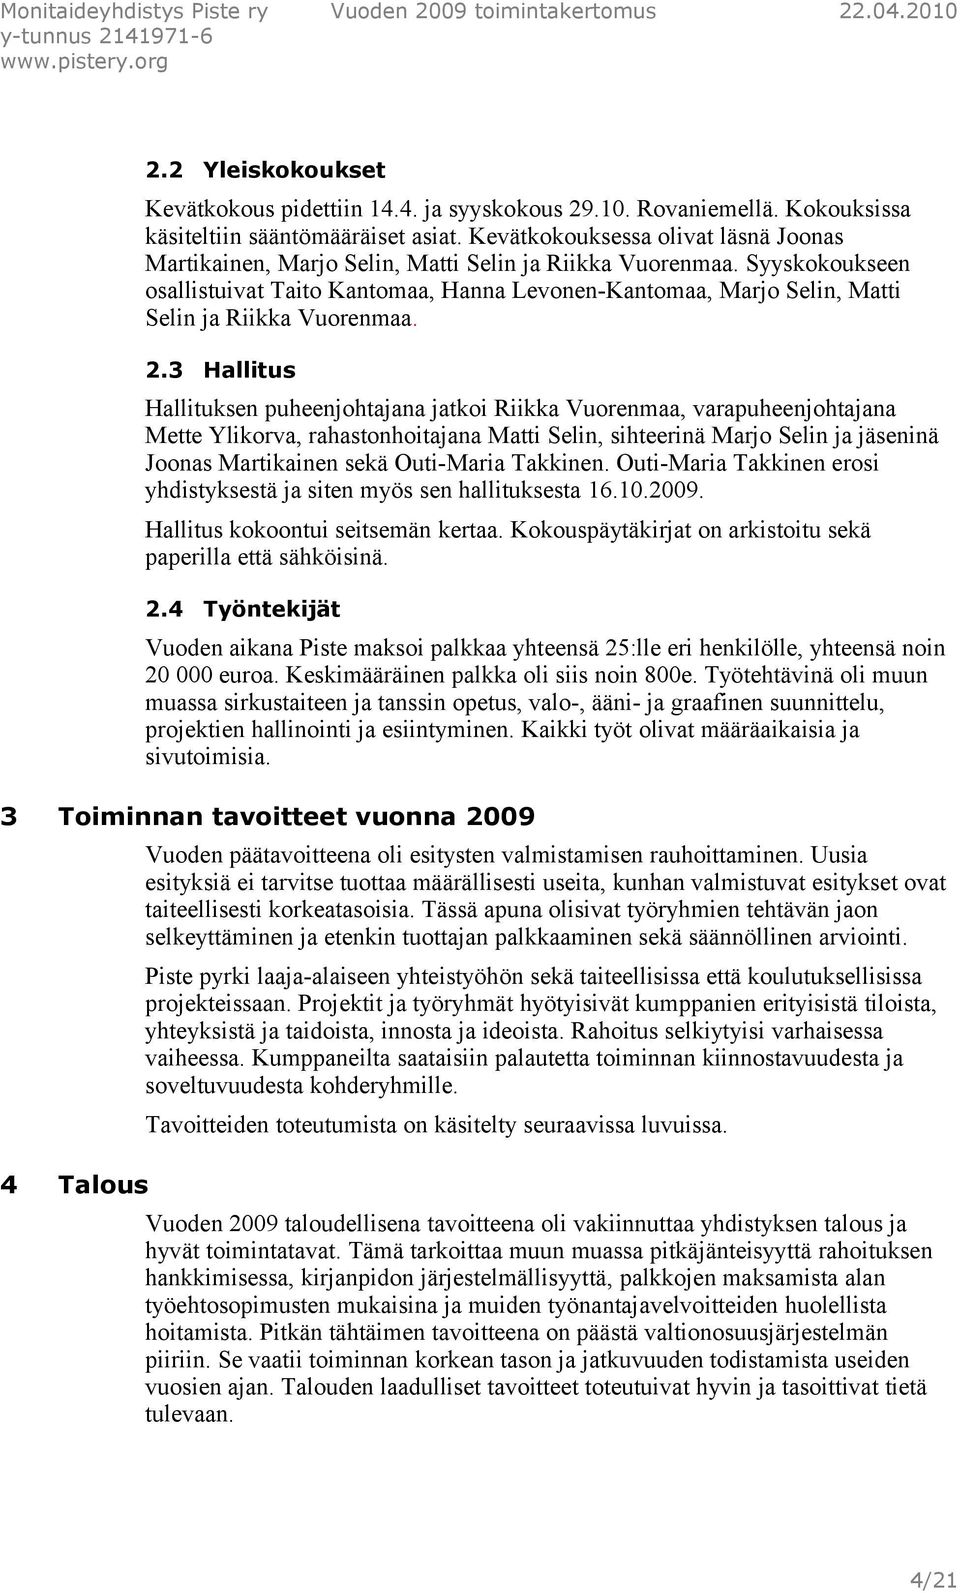 Syyskokoukseen osallistuivat Taito Kantomaa, Hanna Levonen-Kantomaa, Marjo Selin, Matti Selin ja Riikka Vuorenmaa. 2.